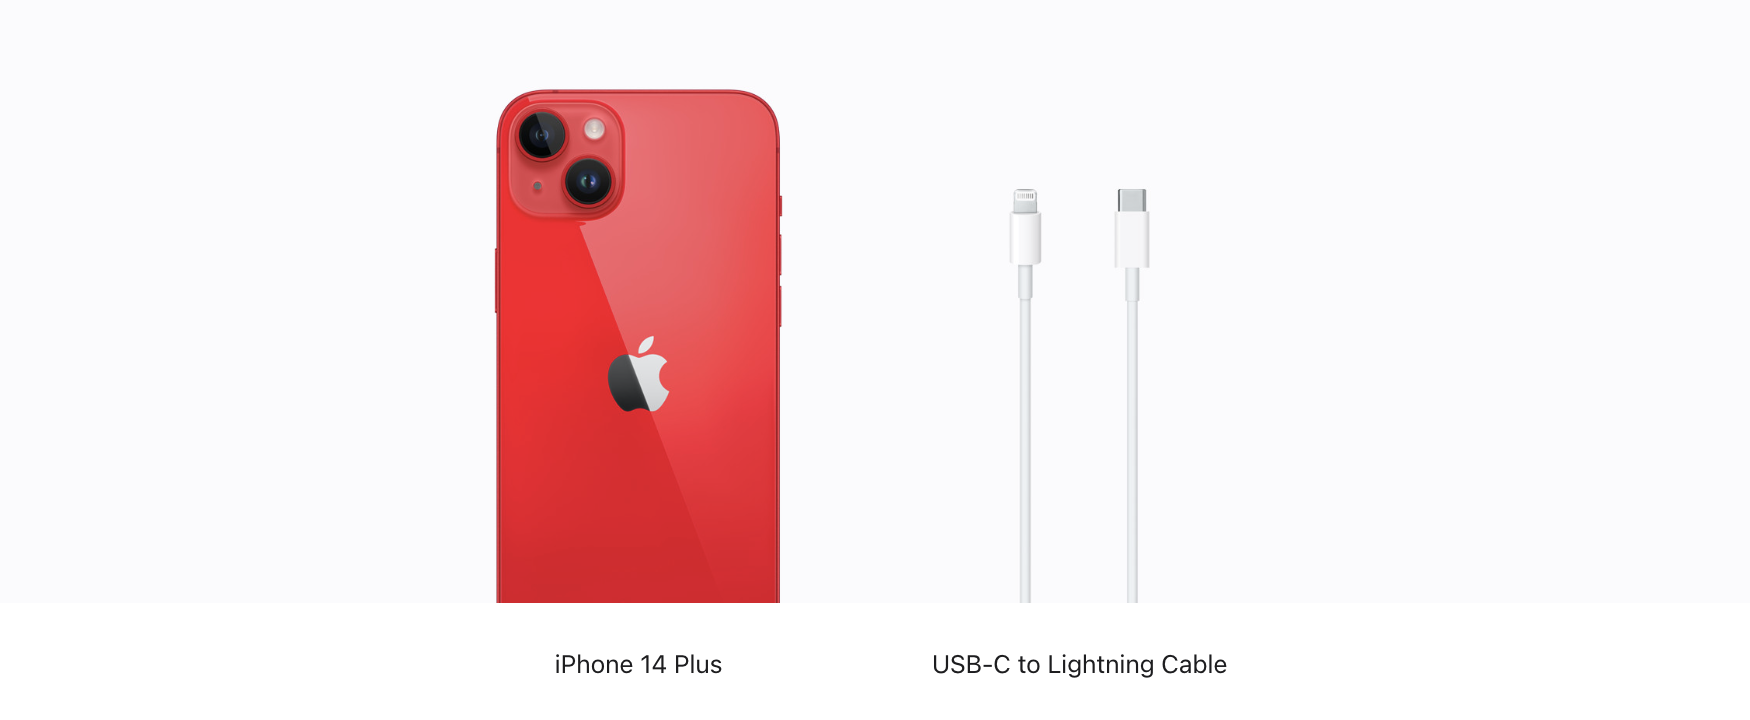 Apple iPhone 14 Plus 256GB (PRODUCT) Red MQ573, Phones